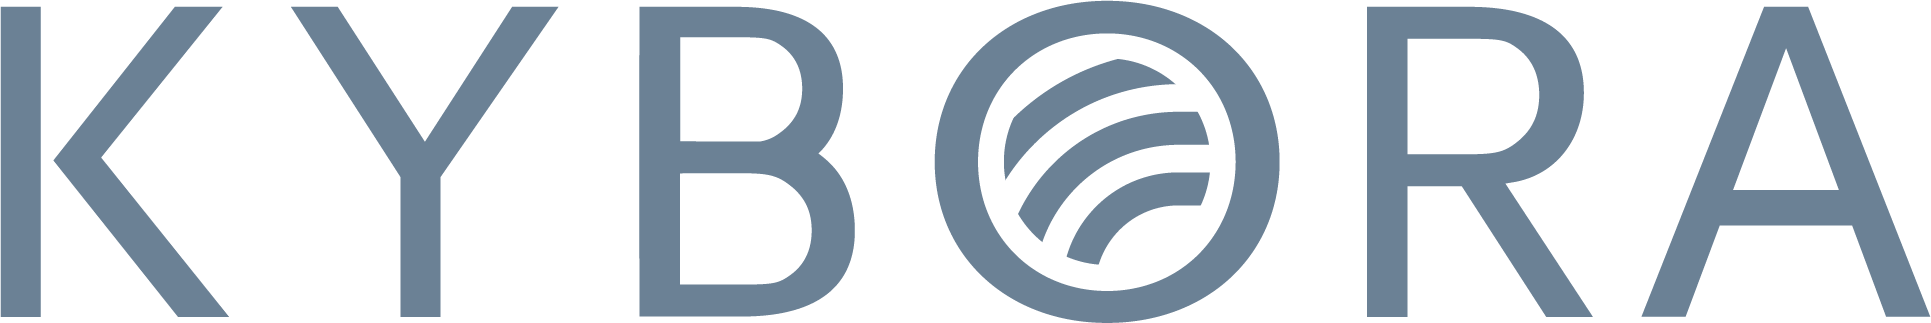 Kybora logo